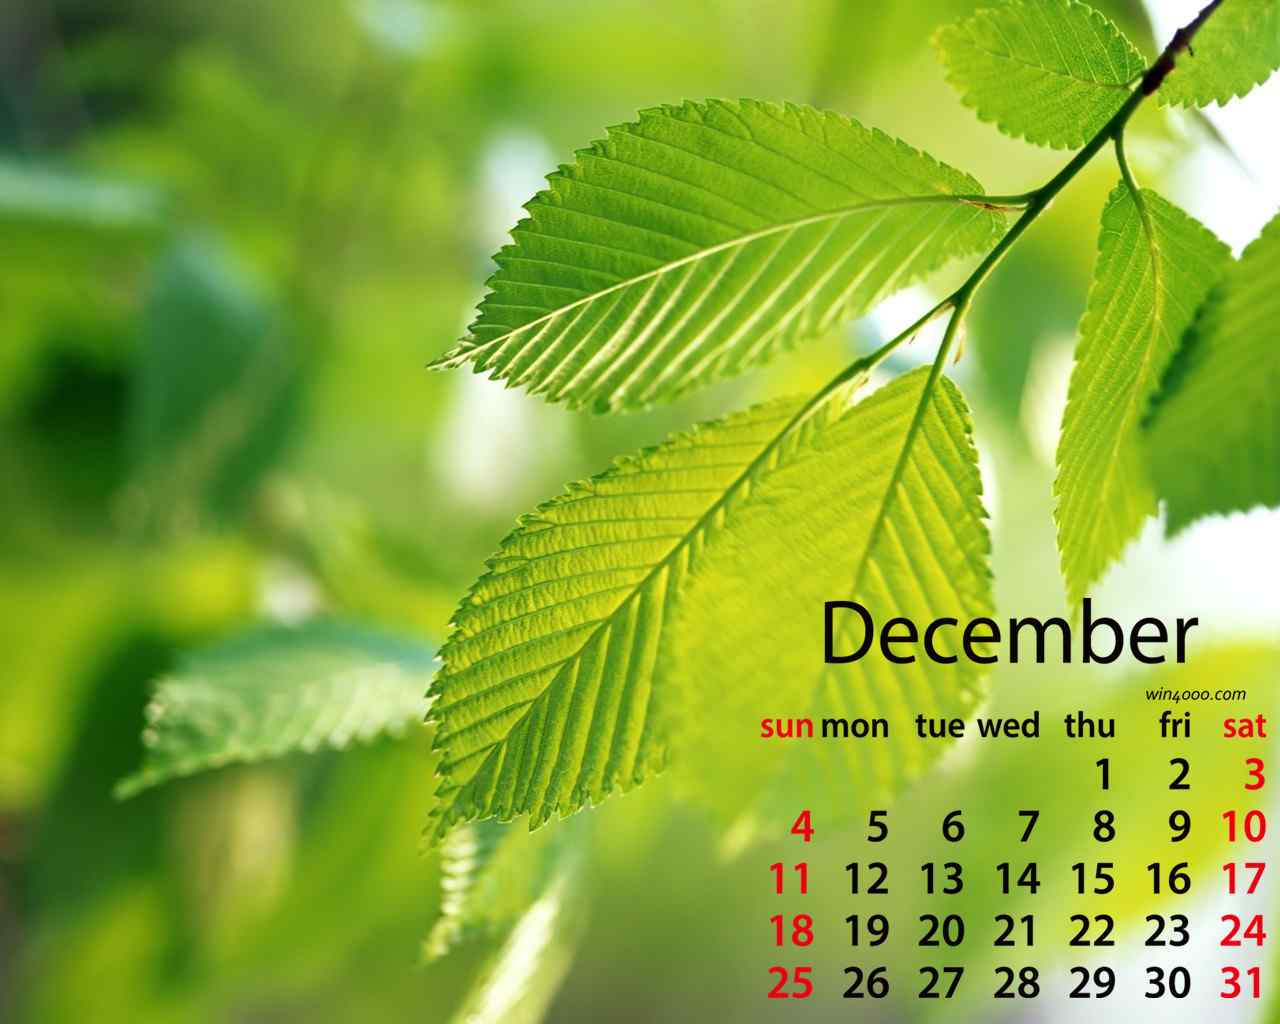 2016年12月日历小清新护眼绿色植物壁纸